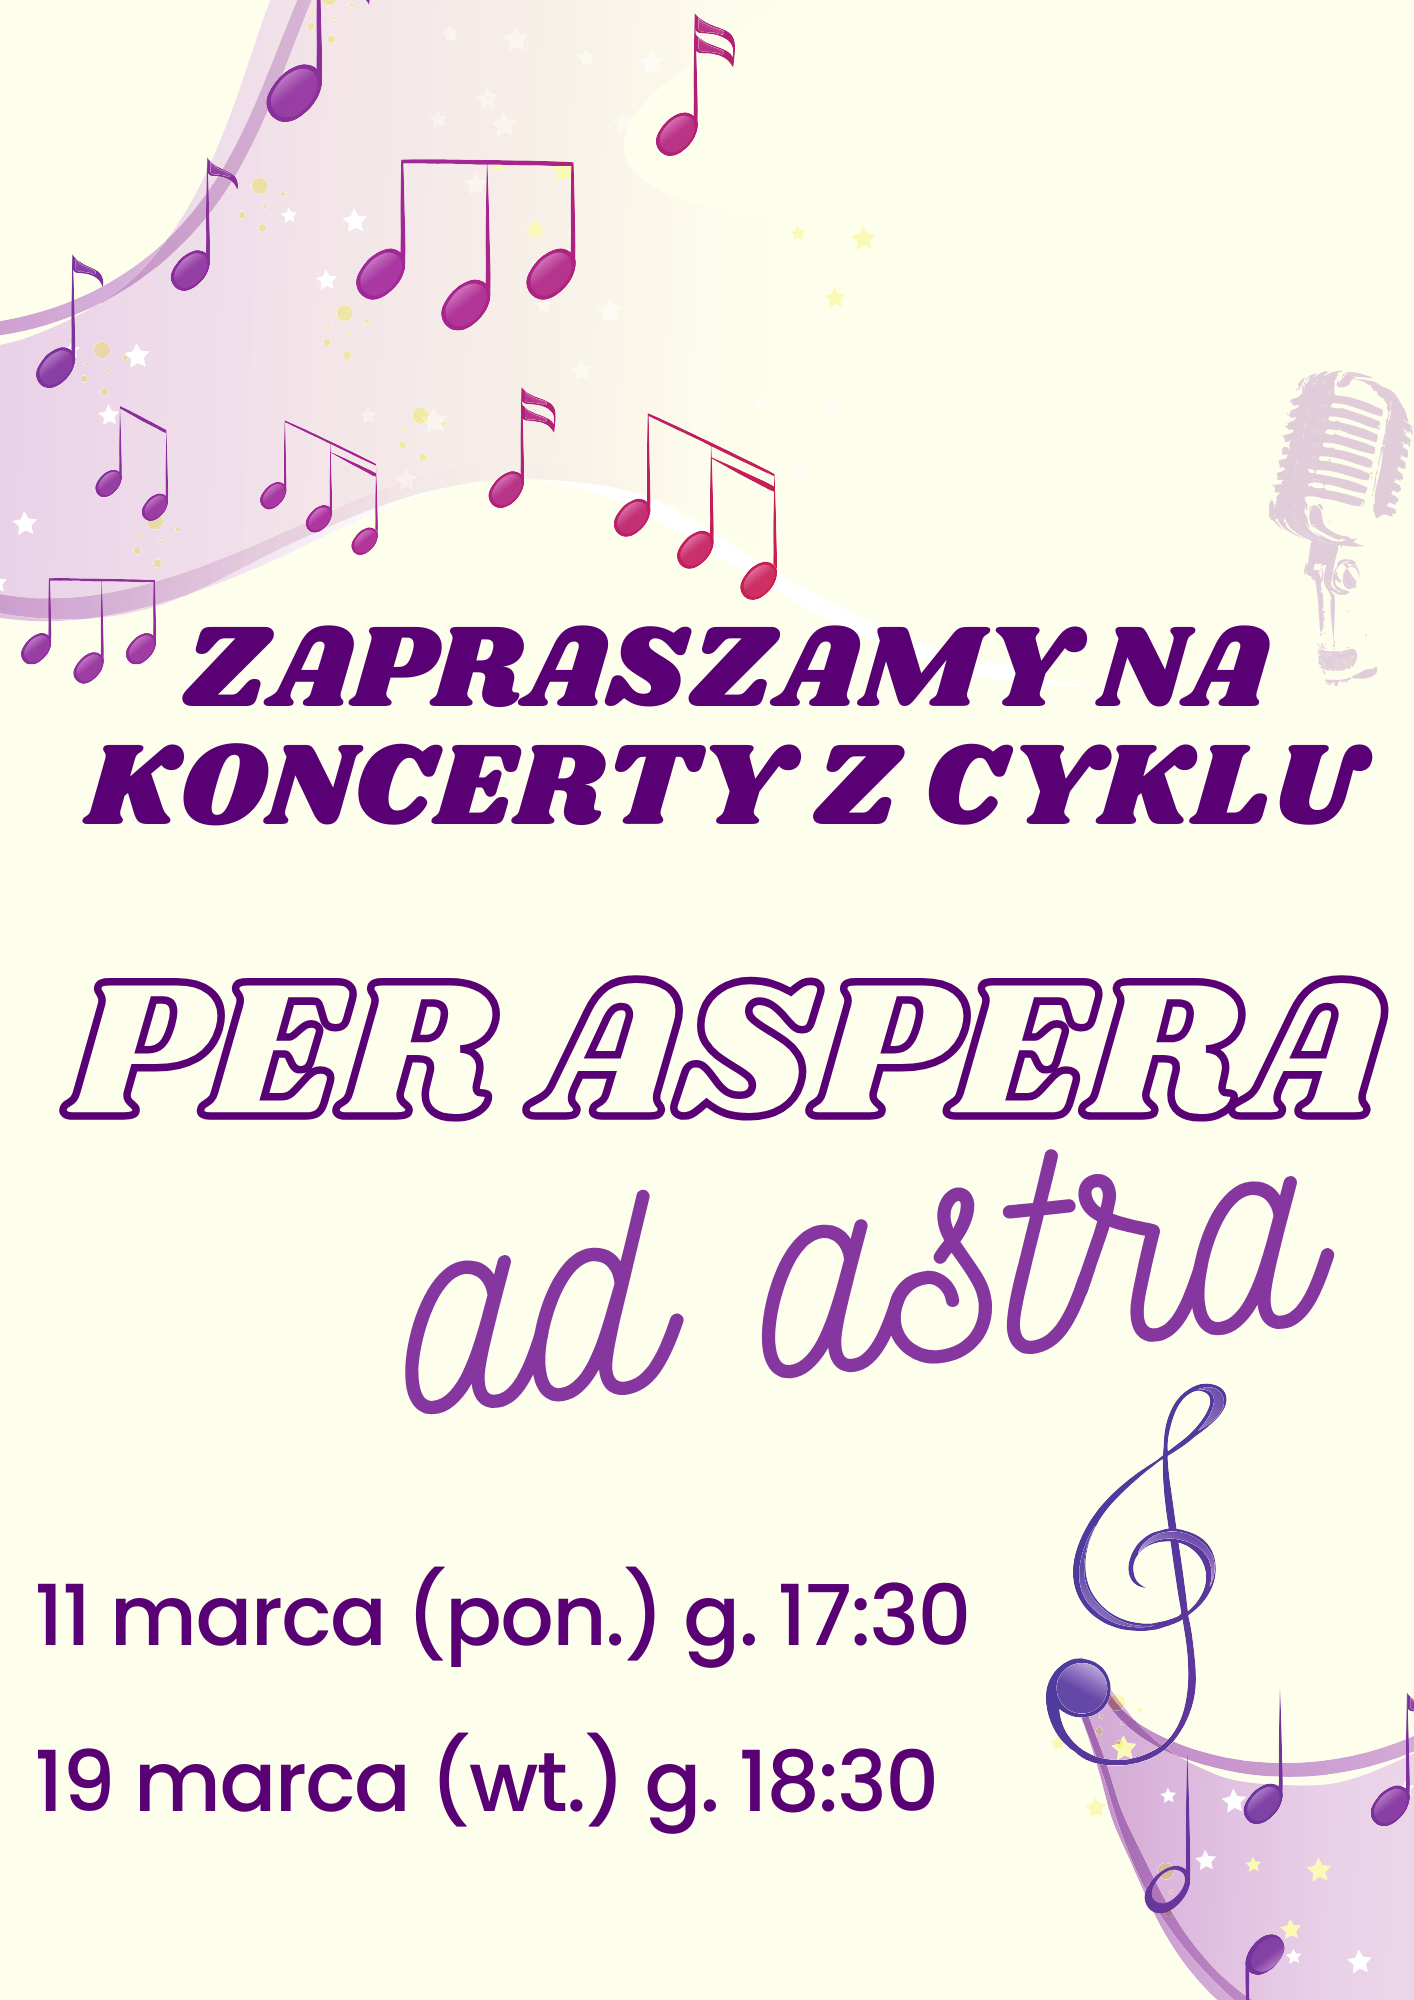 Plakat ze szczegółami koncertu w kolorze fioletowym